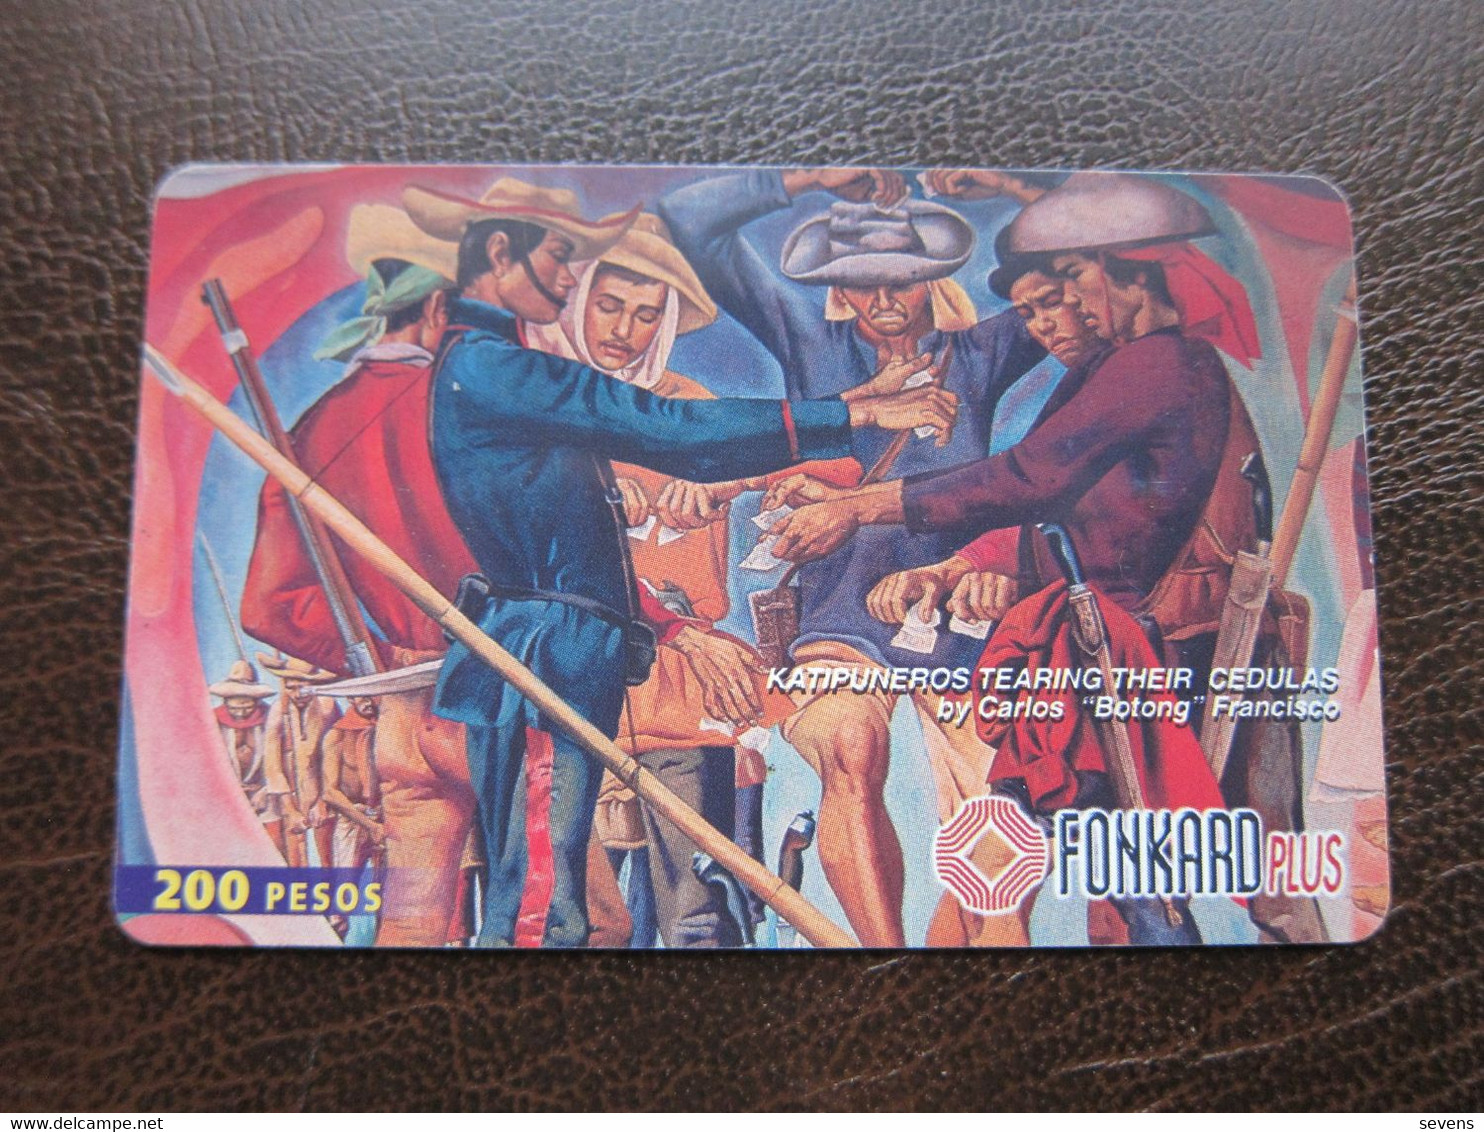 Fonkard Plus Chip Phonecard,painting By Carlos "Botong" Francisco, 200 Pesos ,used - Filipinas